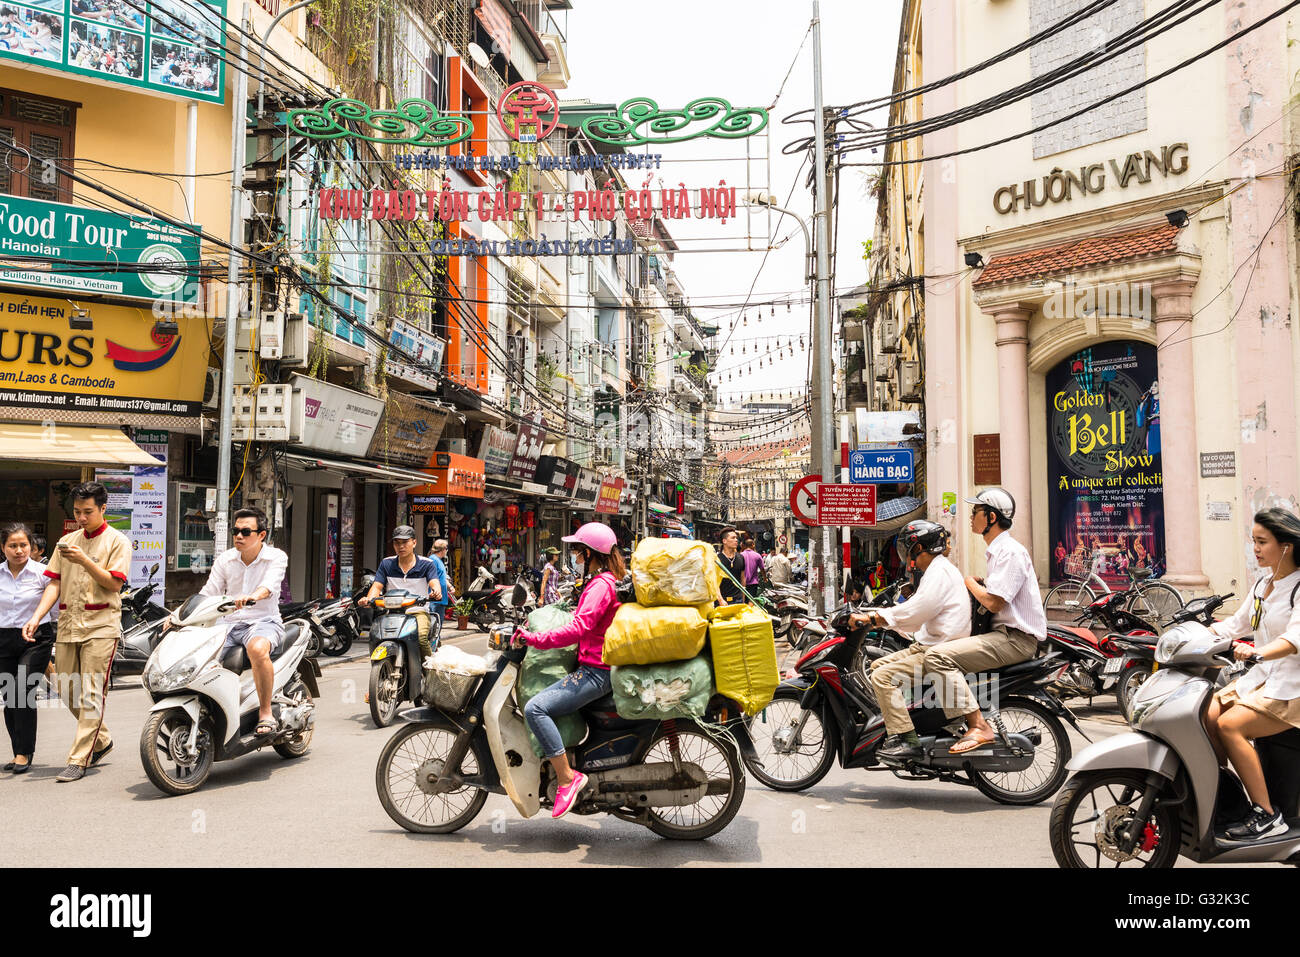 Occupato in moto il traffico nel quartiere vecchio di Hanoi. moto hanno superato le biciclette come la principale forma di trasporto. Foto Stock